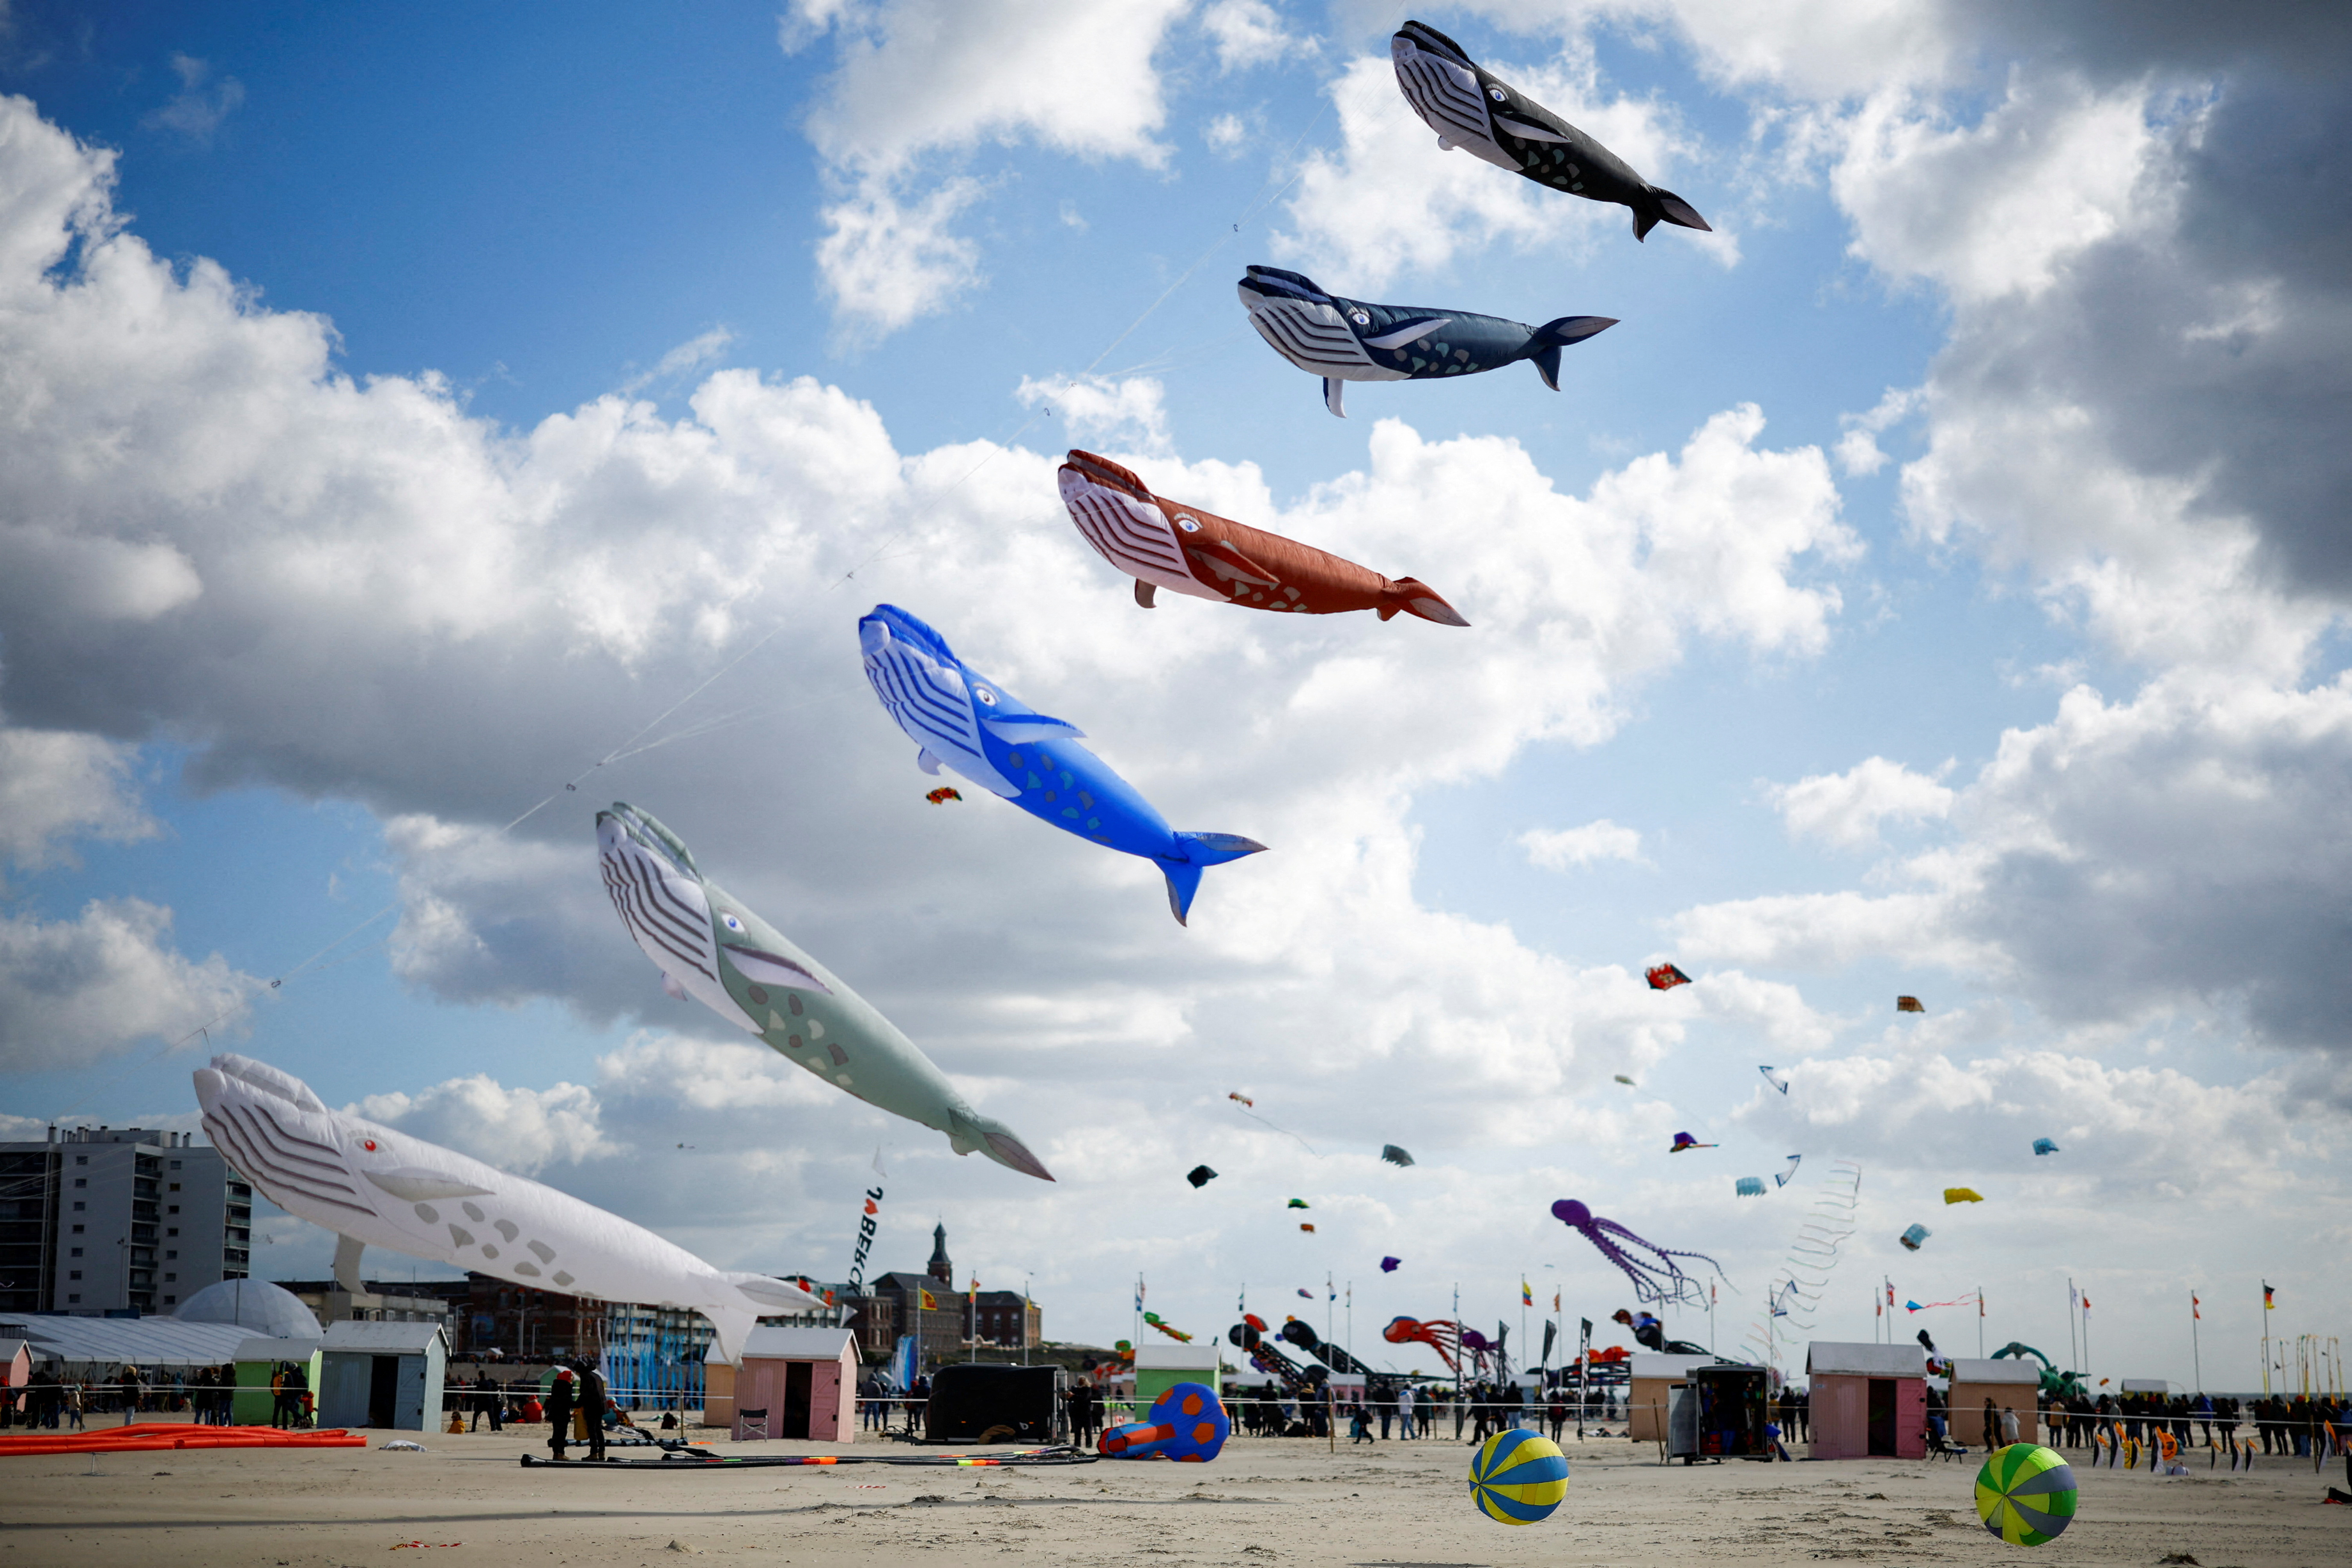 The 37th International Berck-sur-Mer Kite Festival